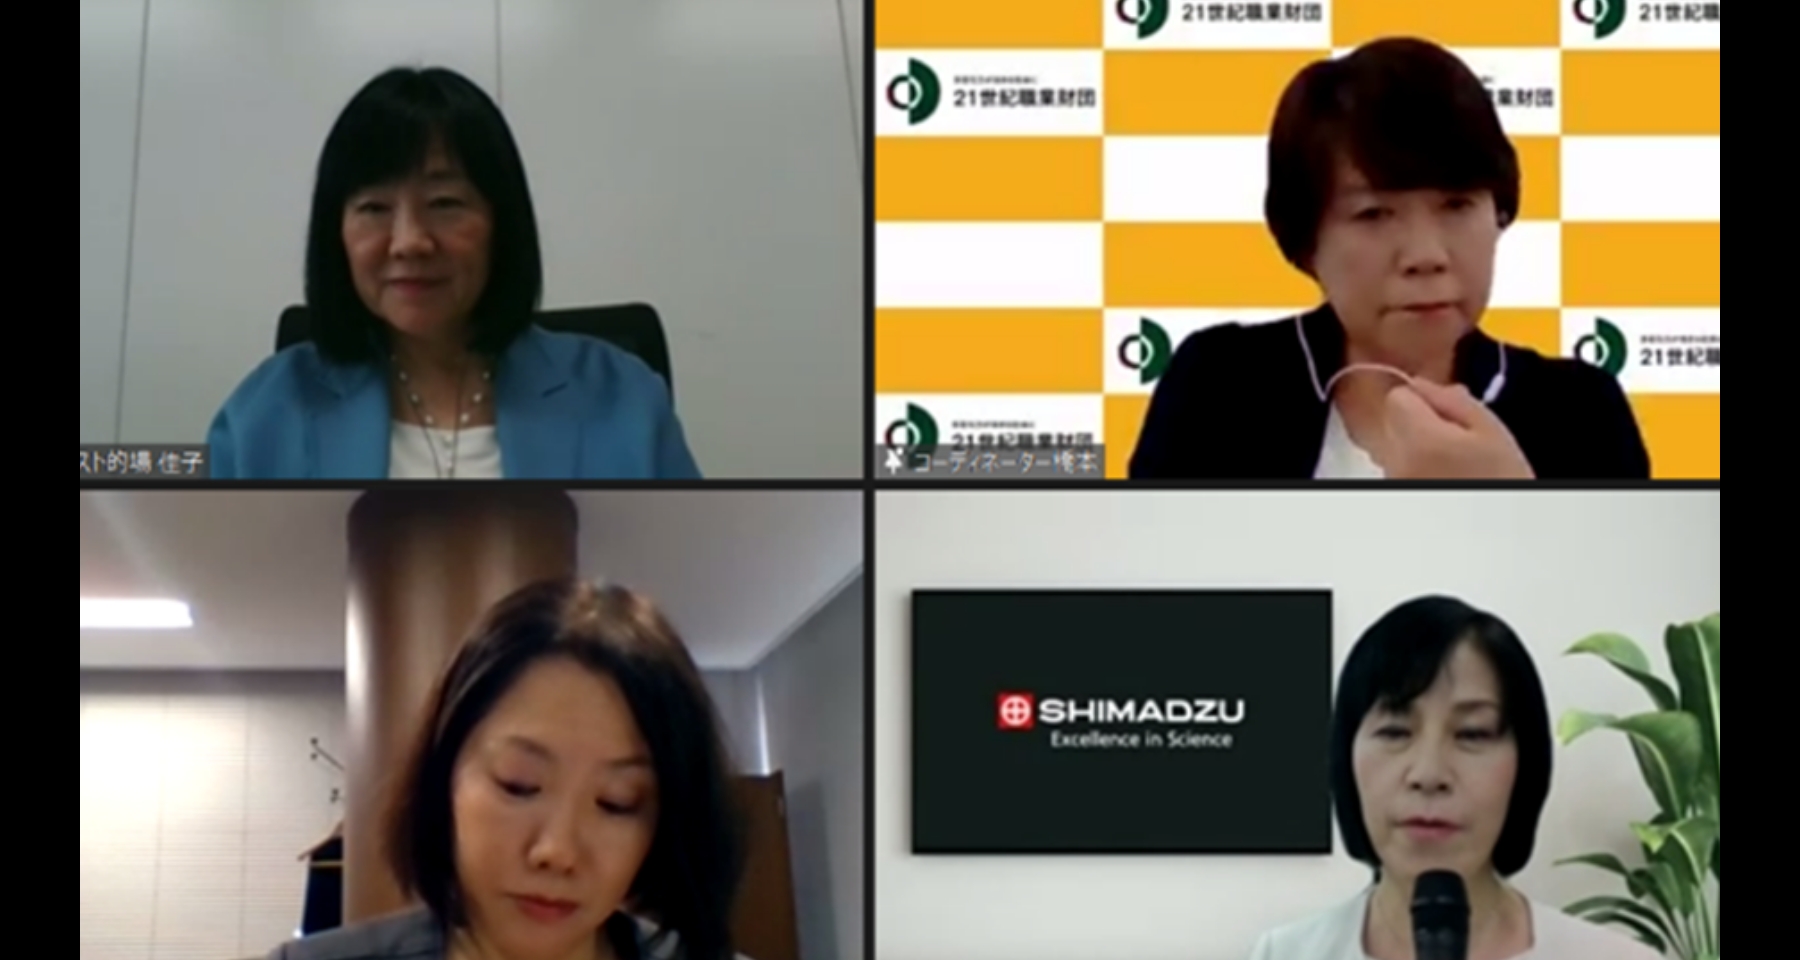 第9回明日のビジネスを担う女性たちの交流会in大阪を開催